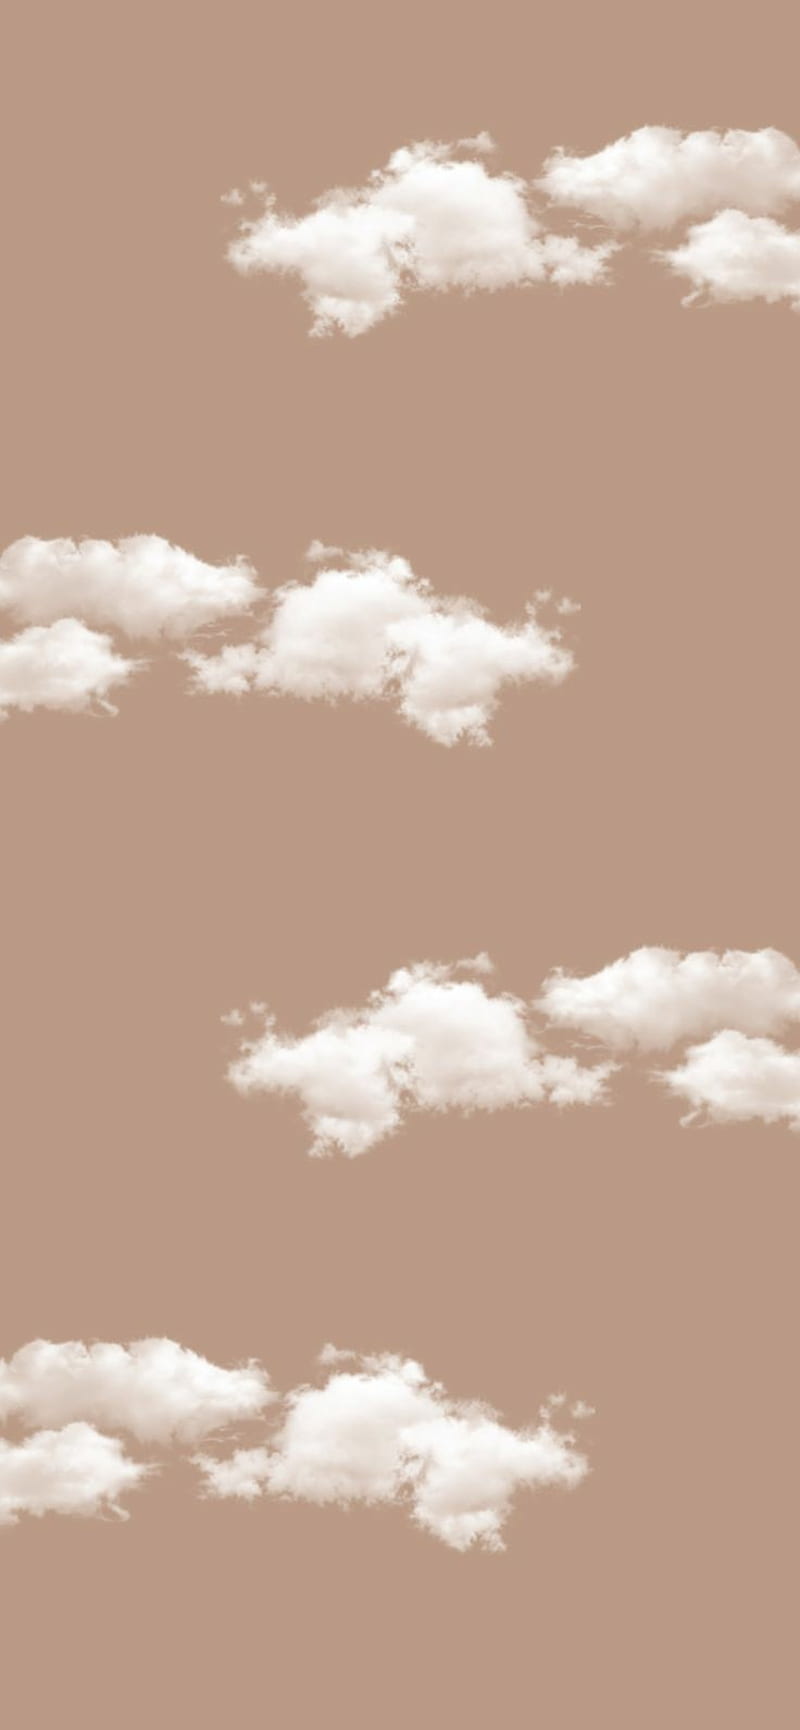 Aesthetic Cloud Wallpapers for Desktop  PixelsTalkNet